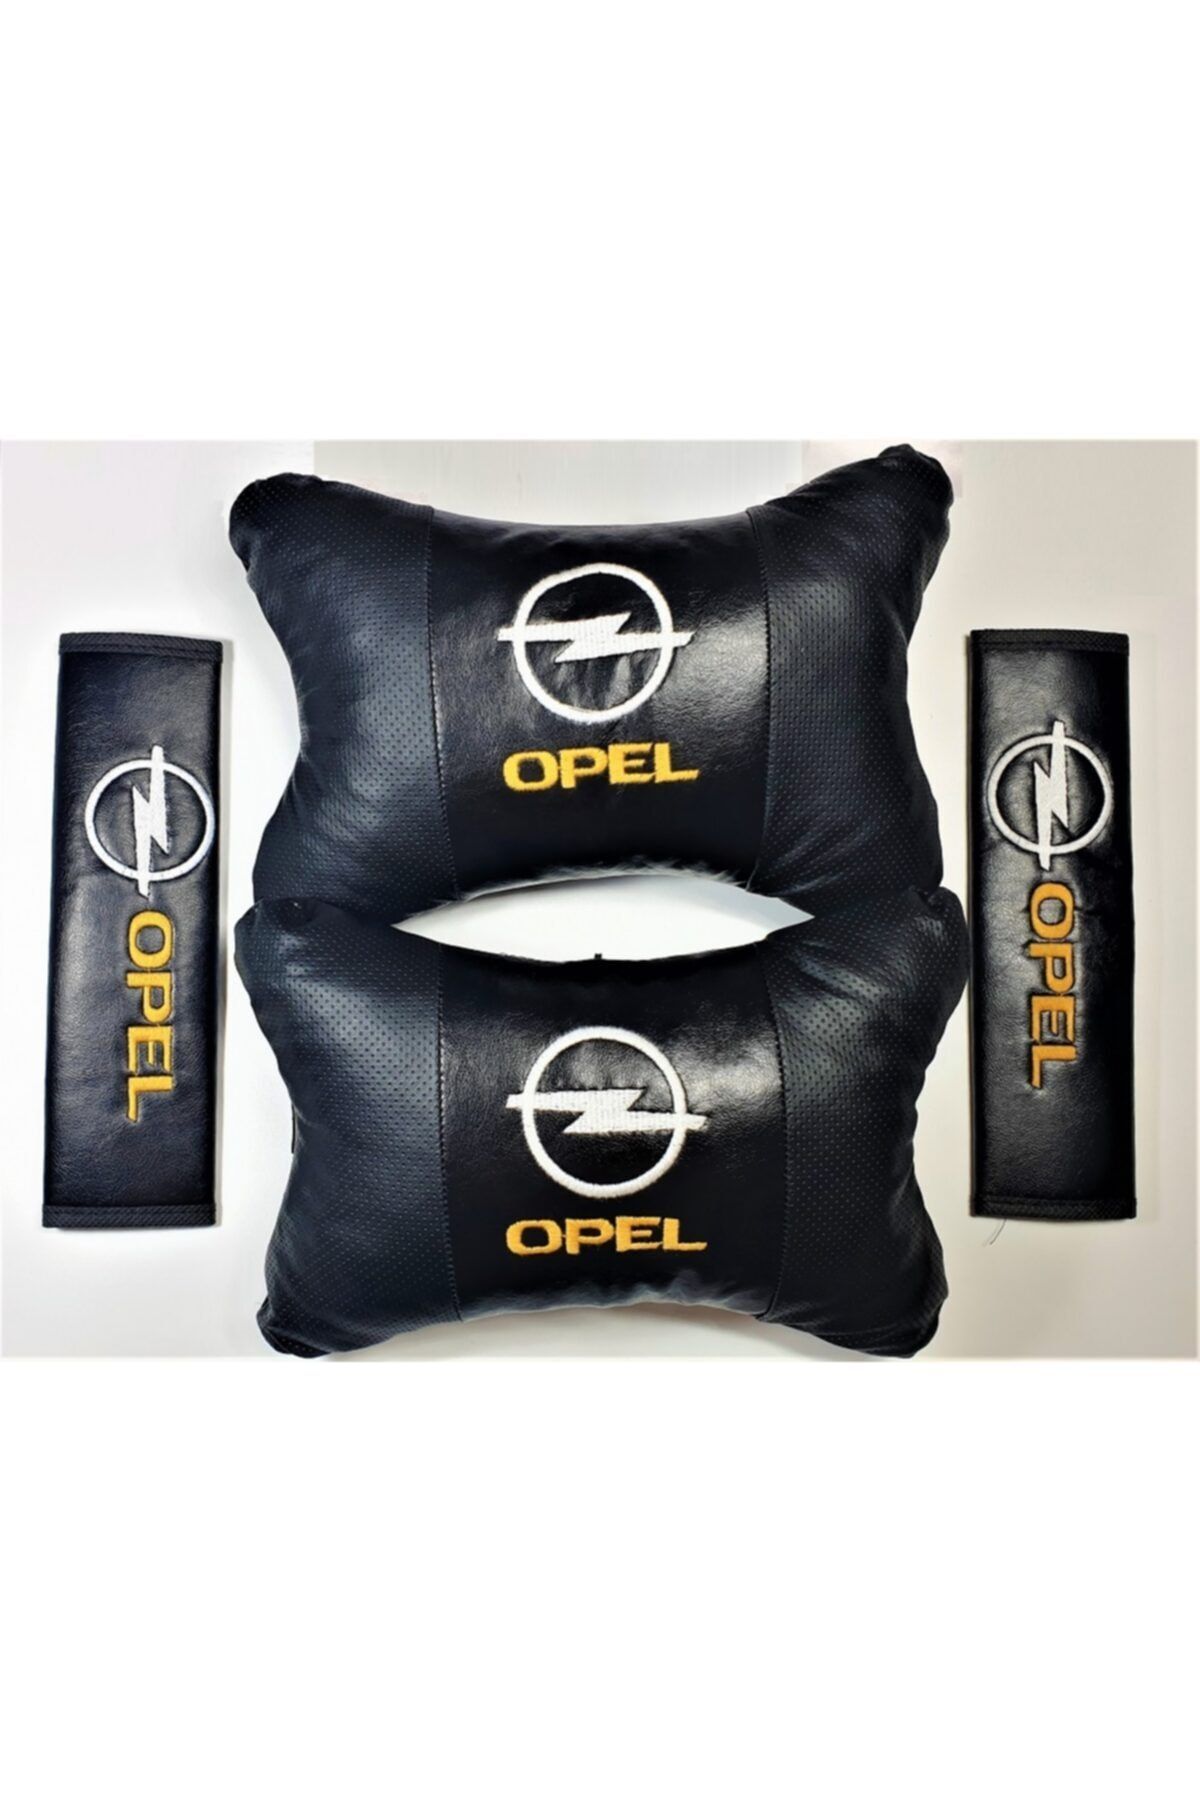 BsElektronik Opel Papyon Yastık Boyun Yastığı + Emniyet Kemeri Kılıfı Takım